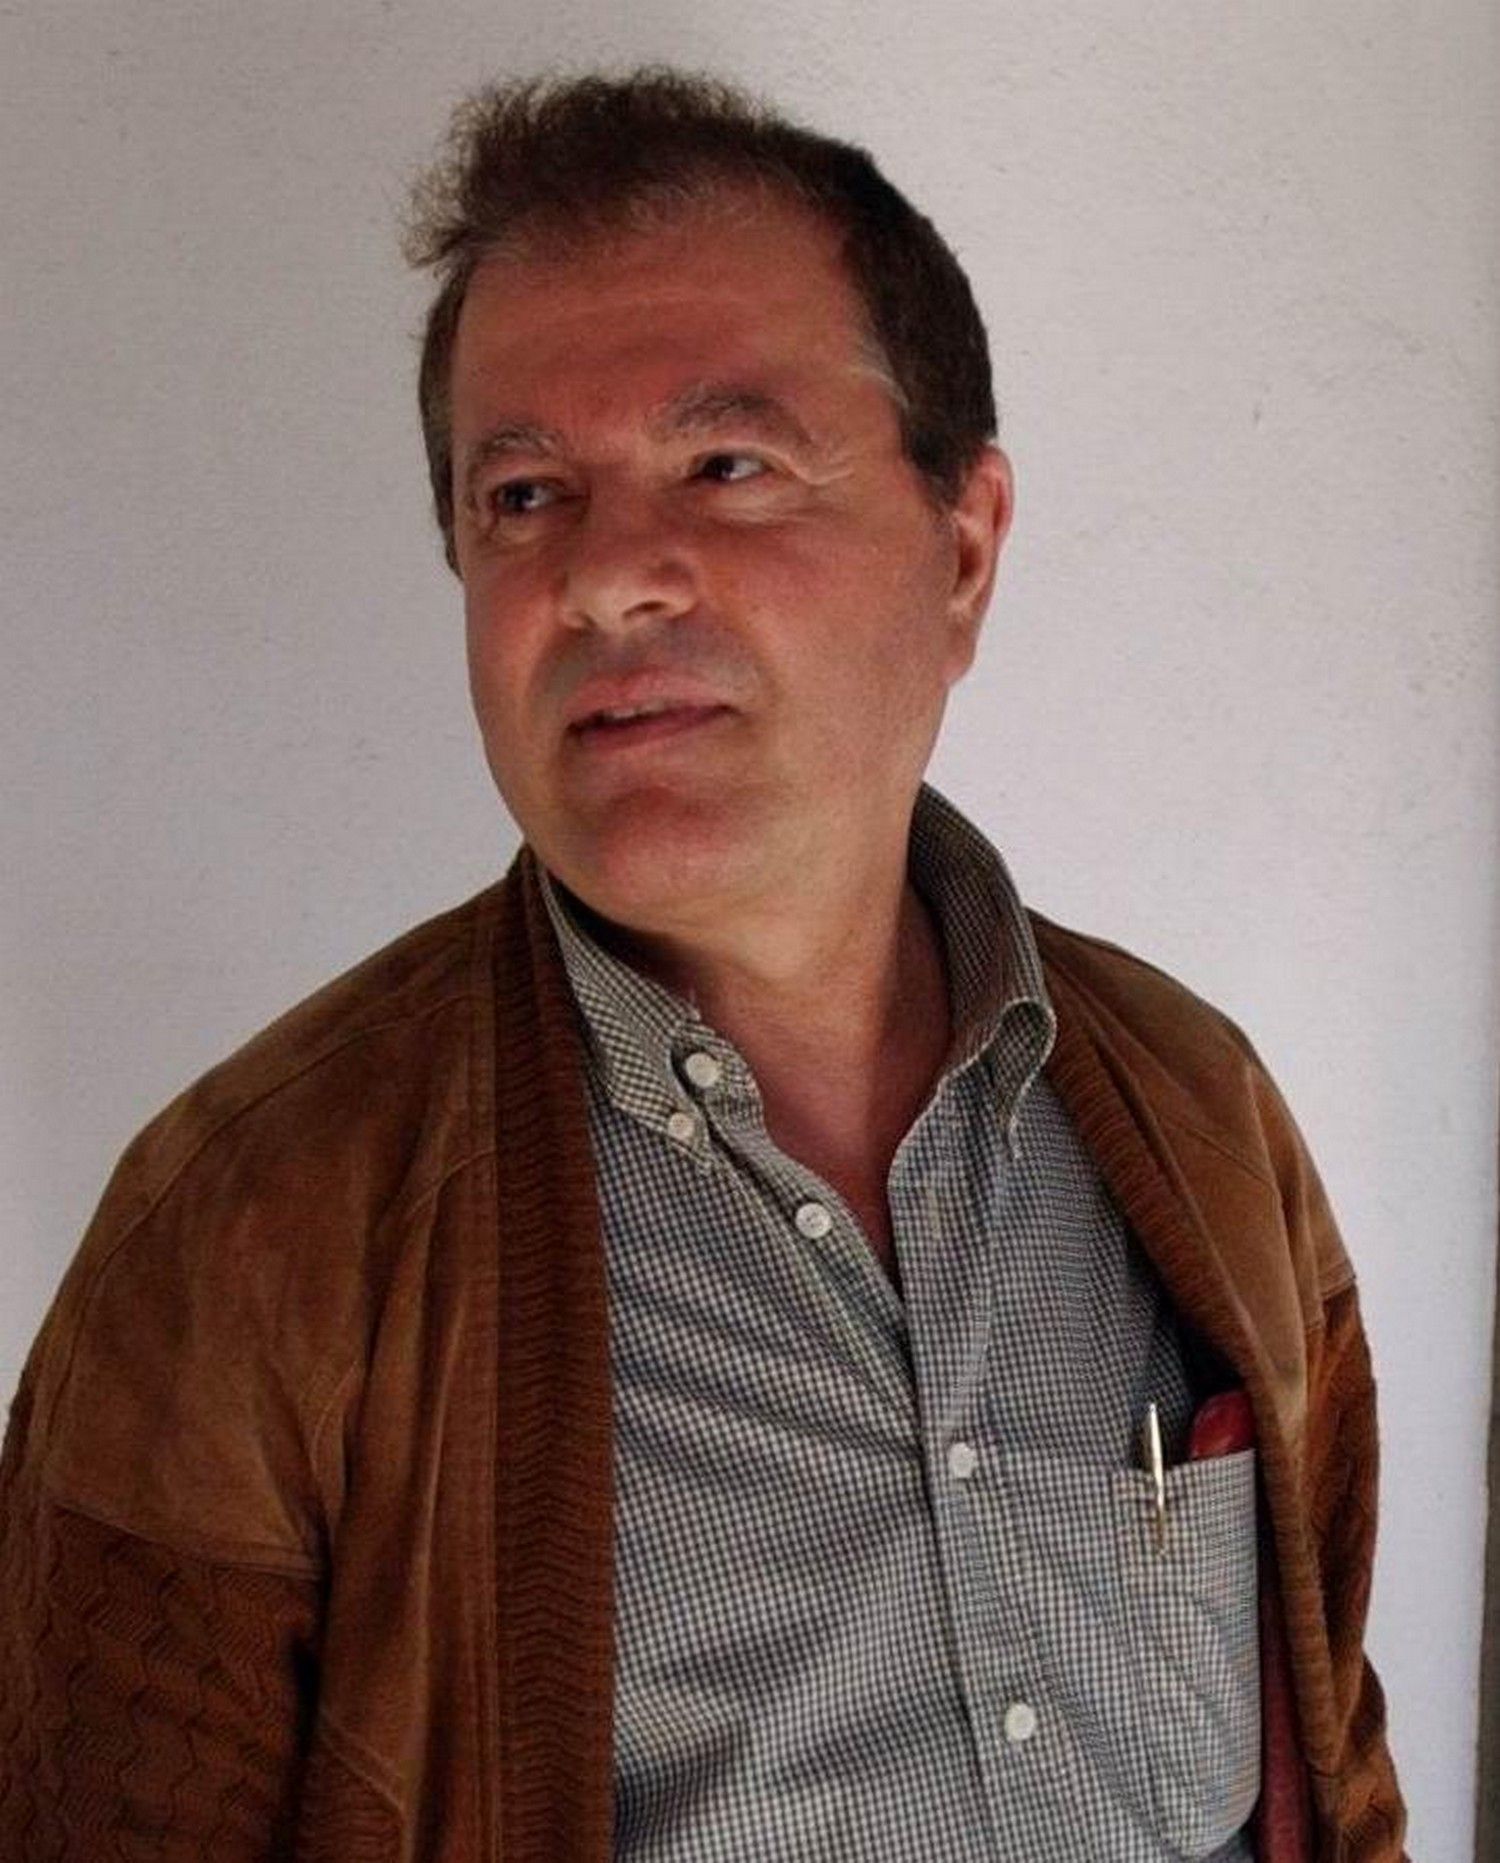 Retazos de la vida de José Manuel Toledo Godoy, dueño de los sexshops Jomatog